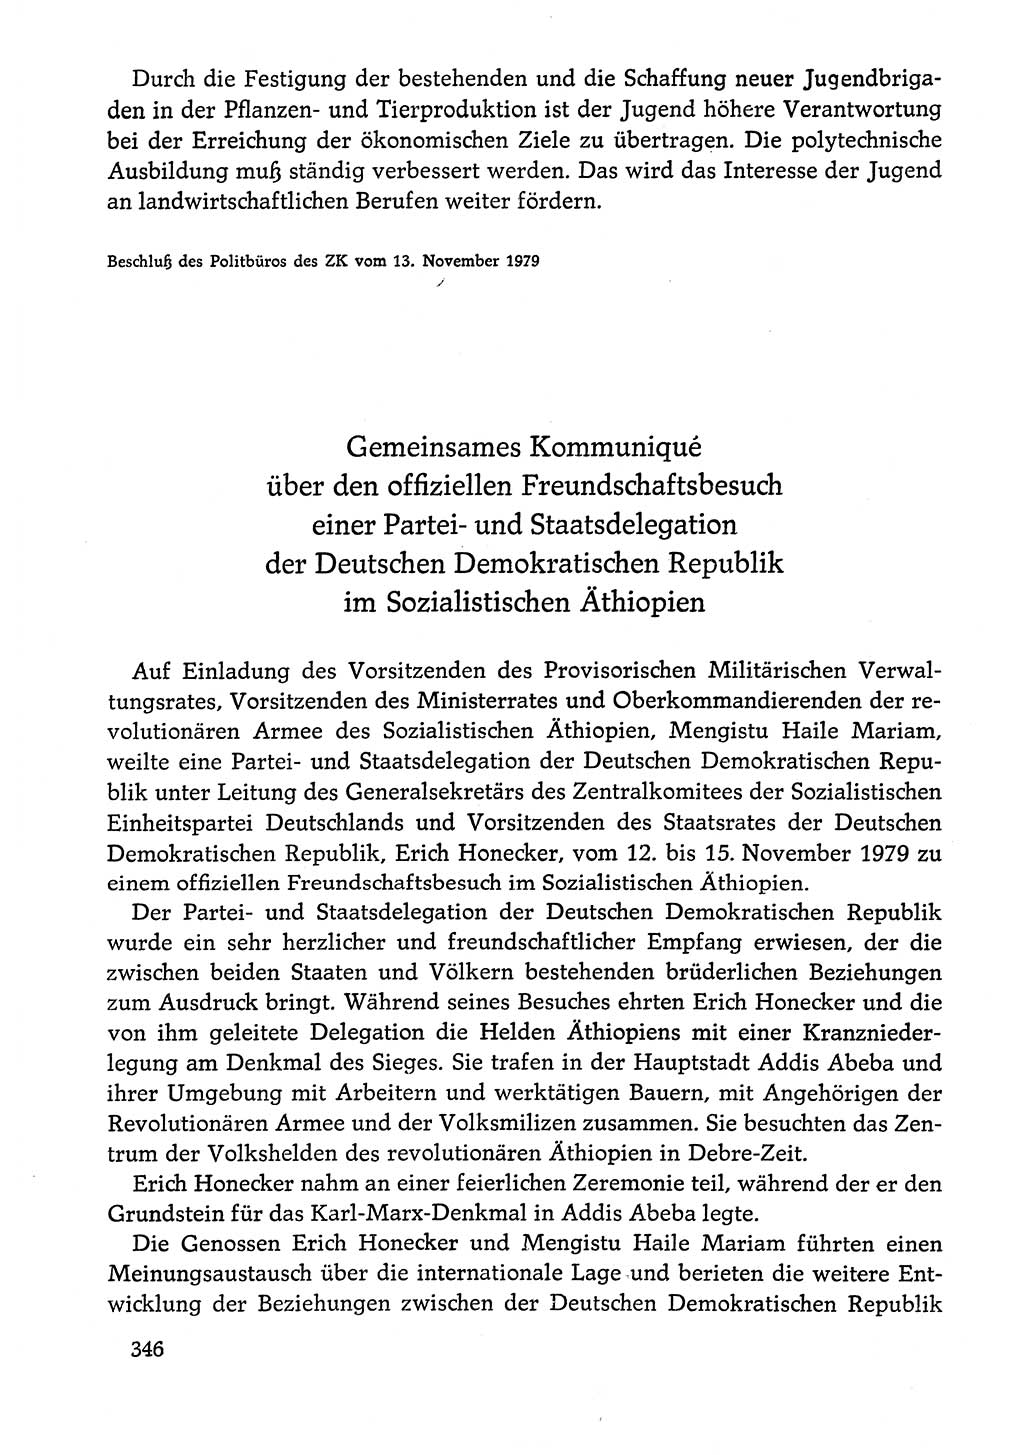 Dokumente der Sozialistischen Einheitspartei Deutschlands (SED) [Deutsche Demokratische Republik (DDR)] 1978-1979, Seite 346 (Dok. SED DDR 1978-1979, S. 346)